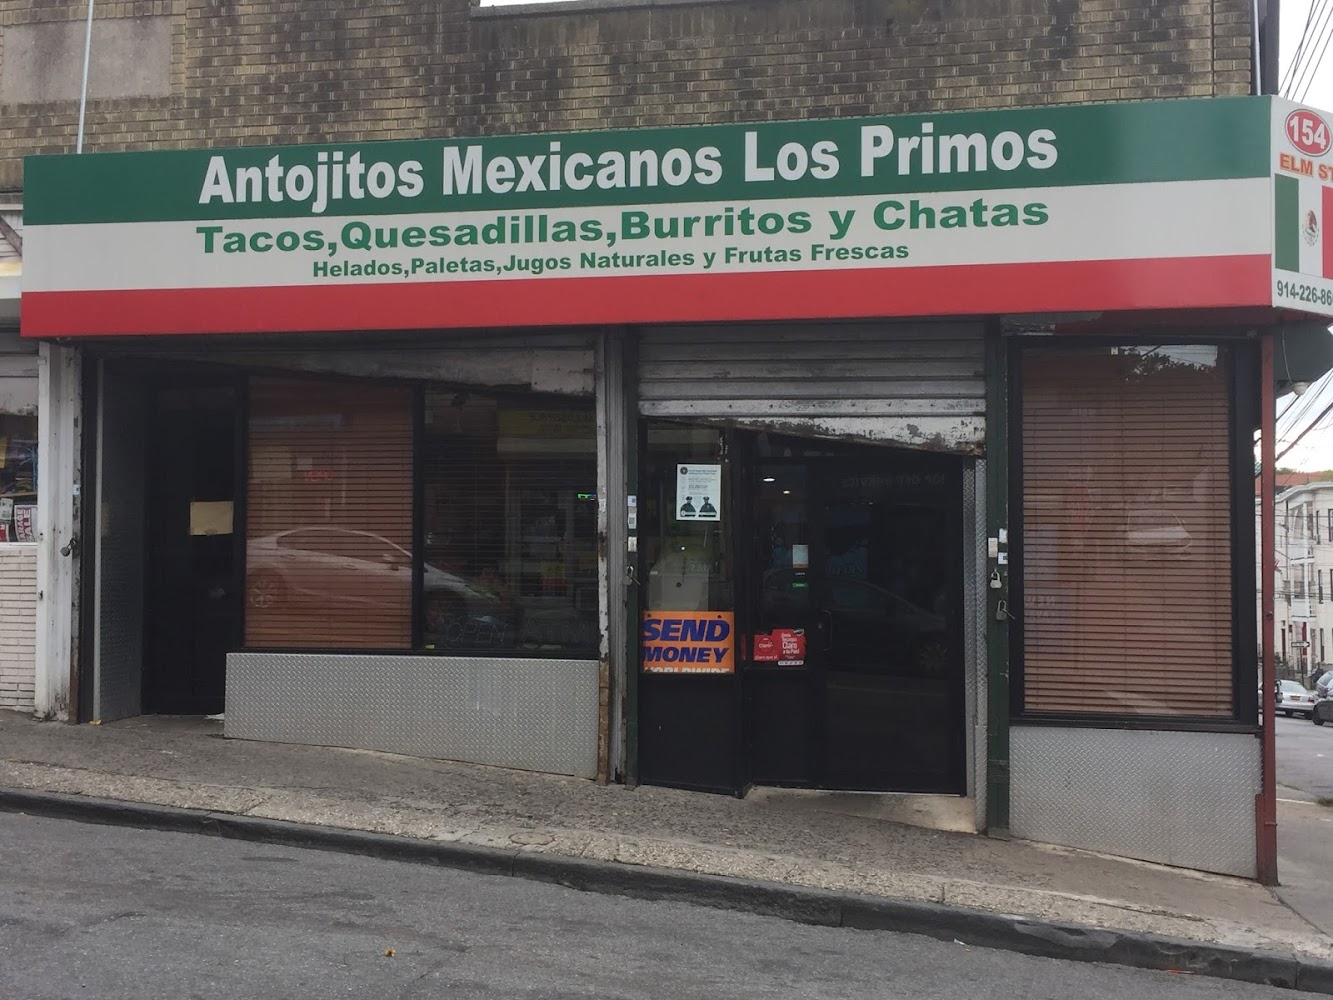 Antojitos Mexicanos los Primos